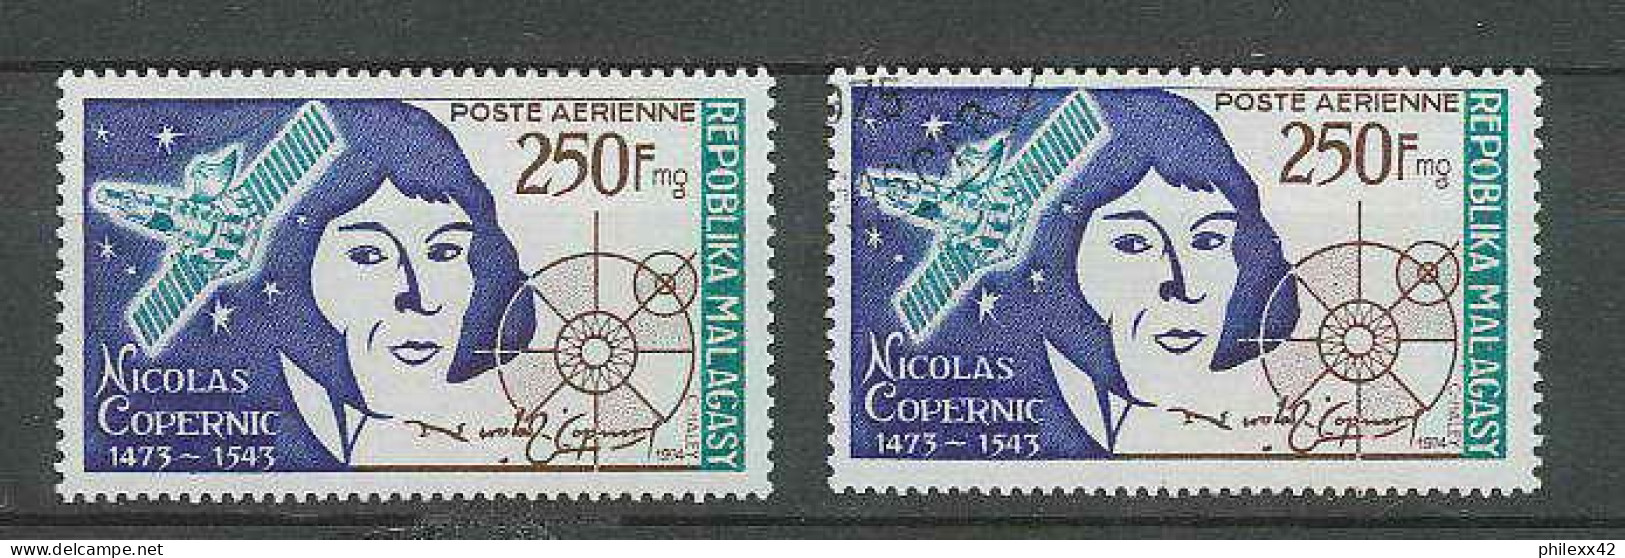 1480/ Espace (space) Neuf ** MNH Madagascar Malagasy Copernic Copernicus Kopernik 134 + USED - Afrique